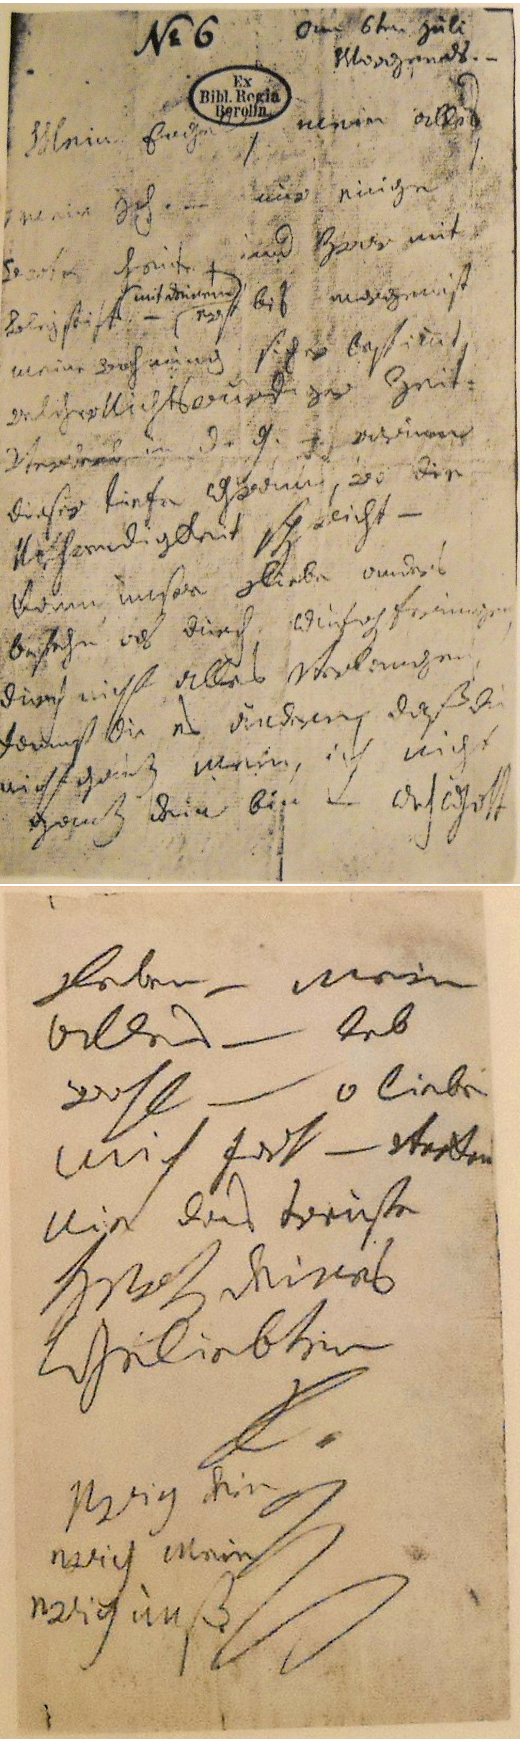 Original Beethoven manuscript